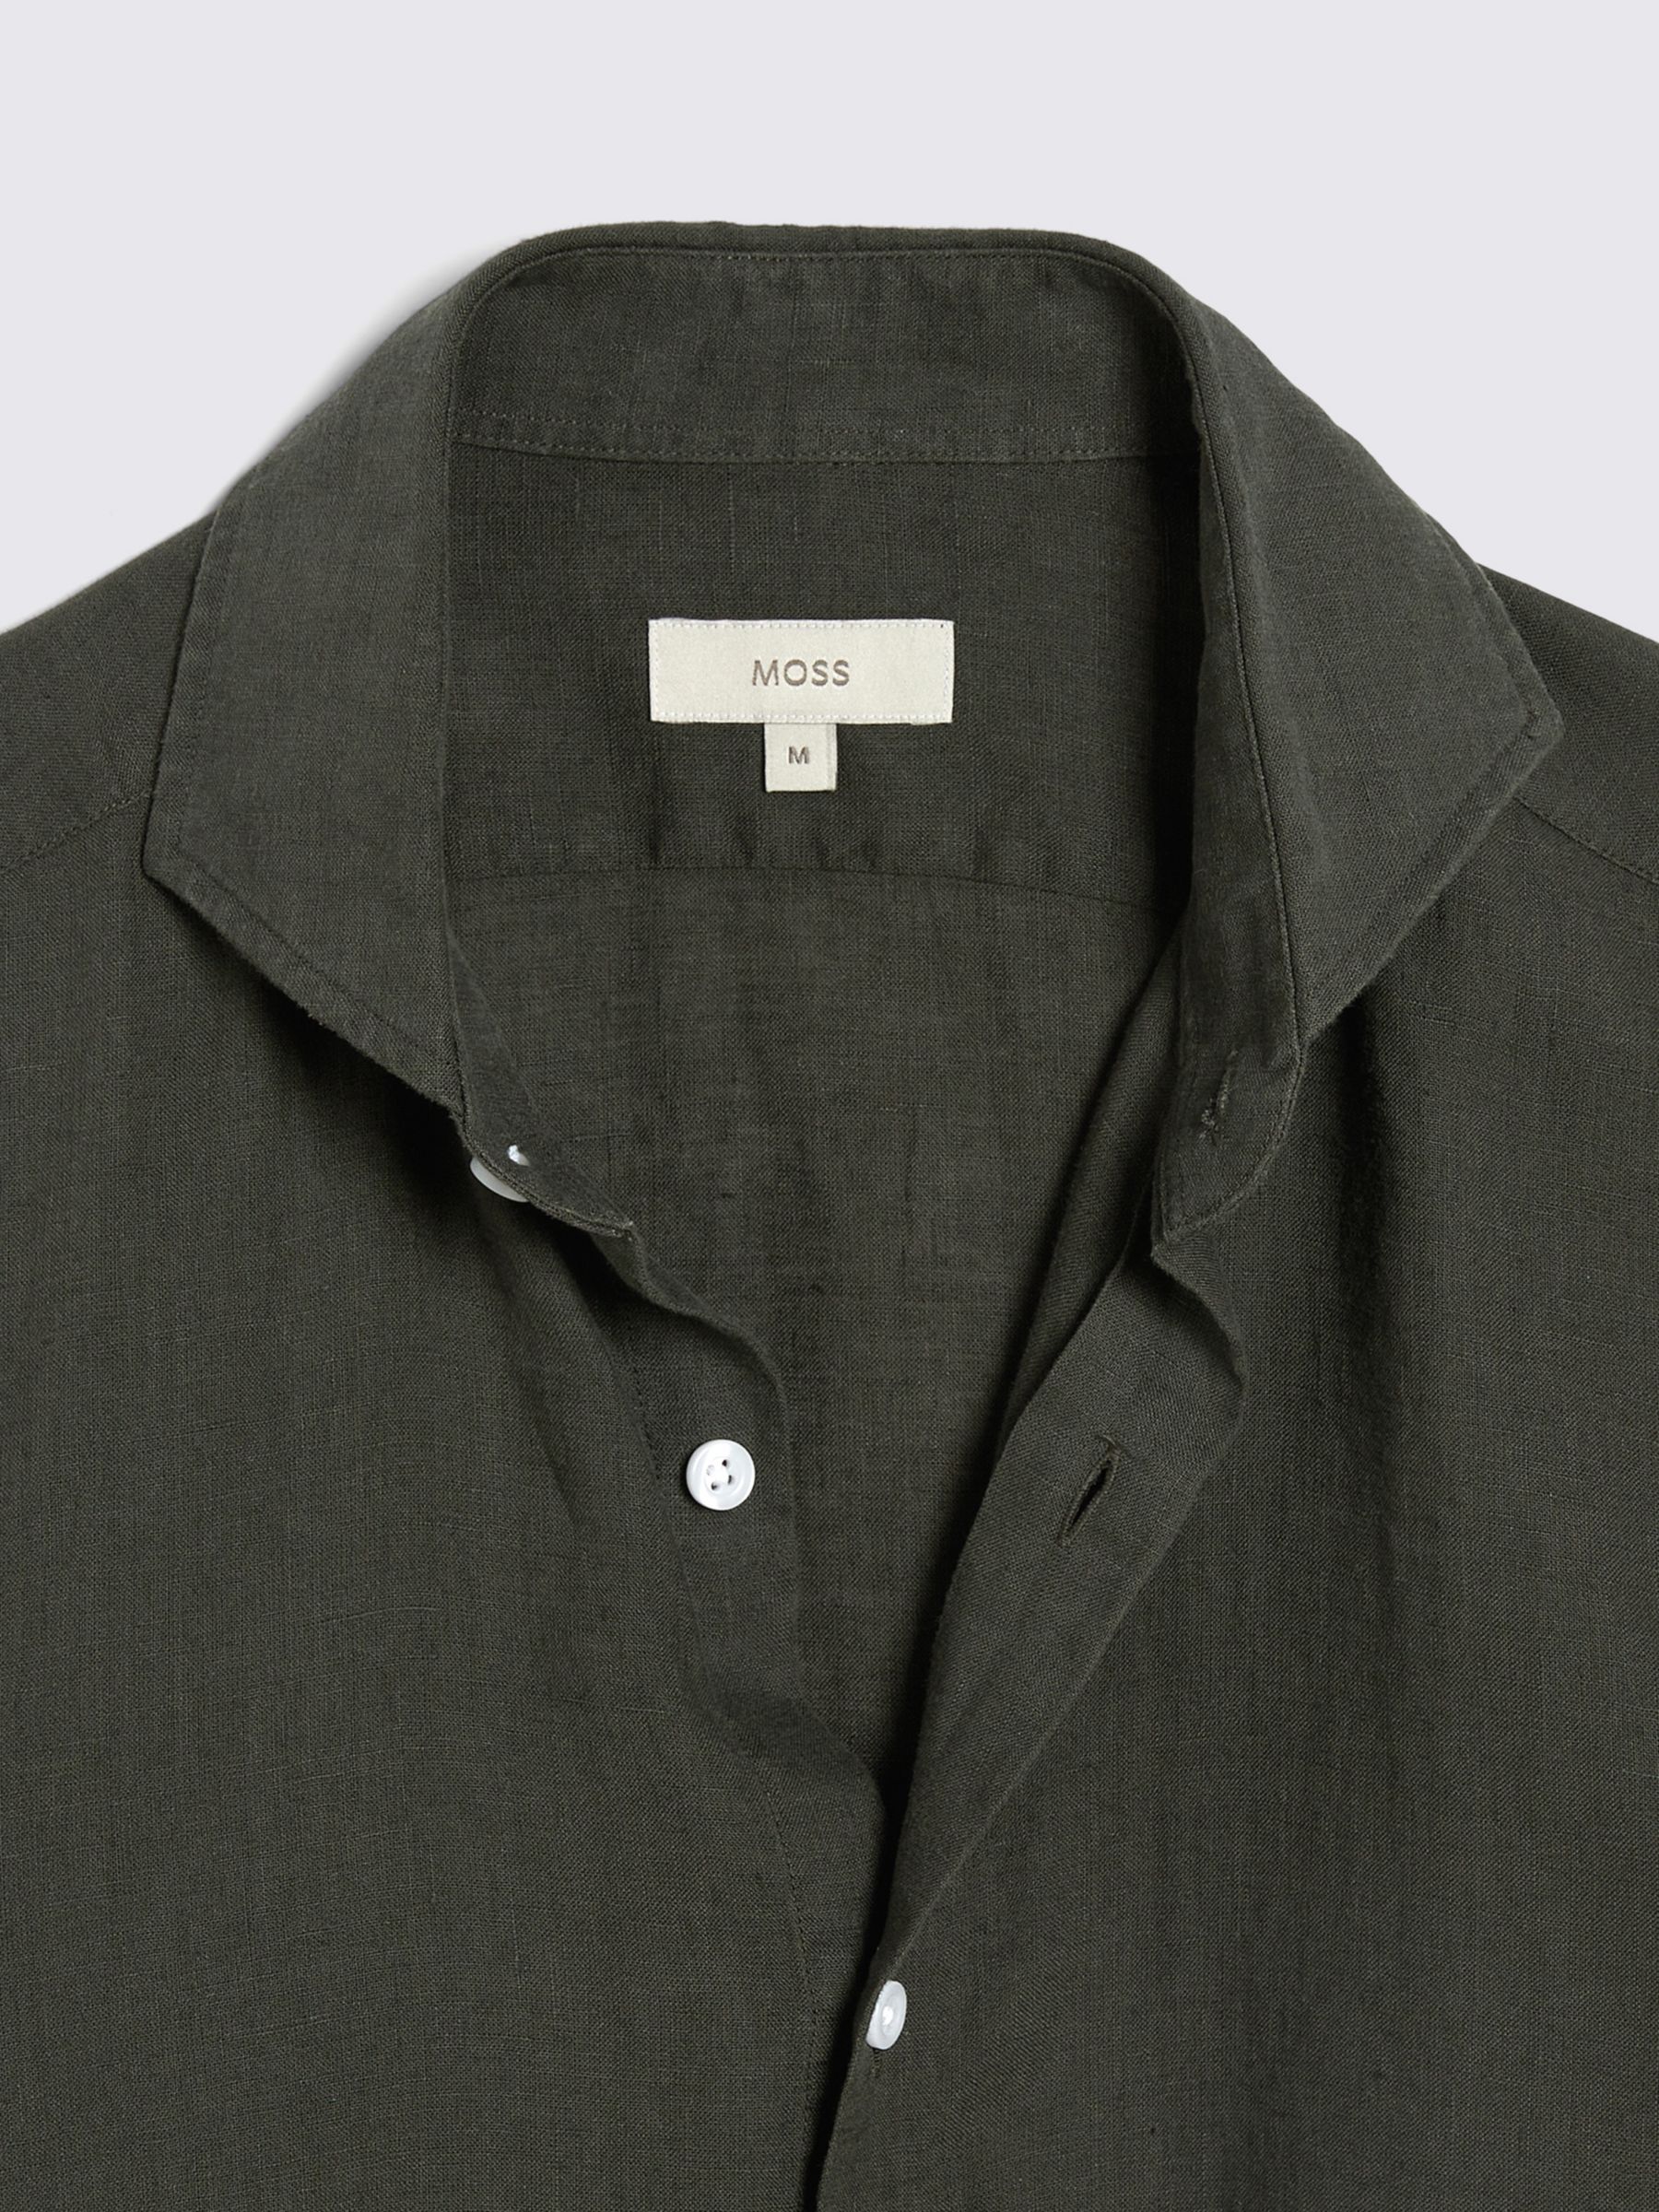 Moss Tailored Fit Linen Long Sleeve Shirt, Khaki, S